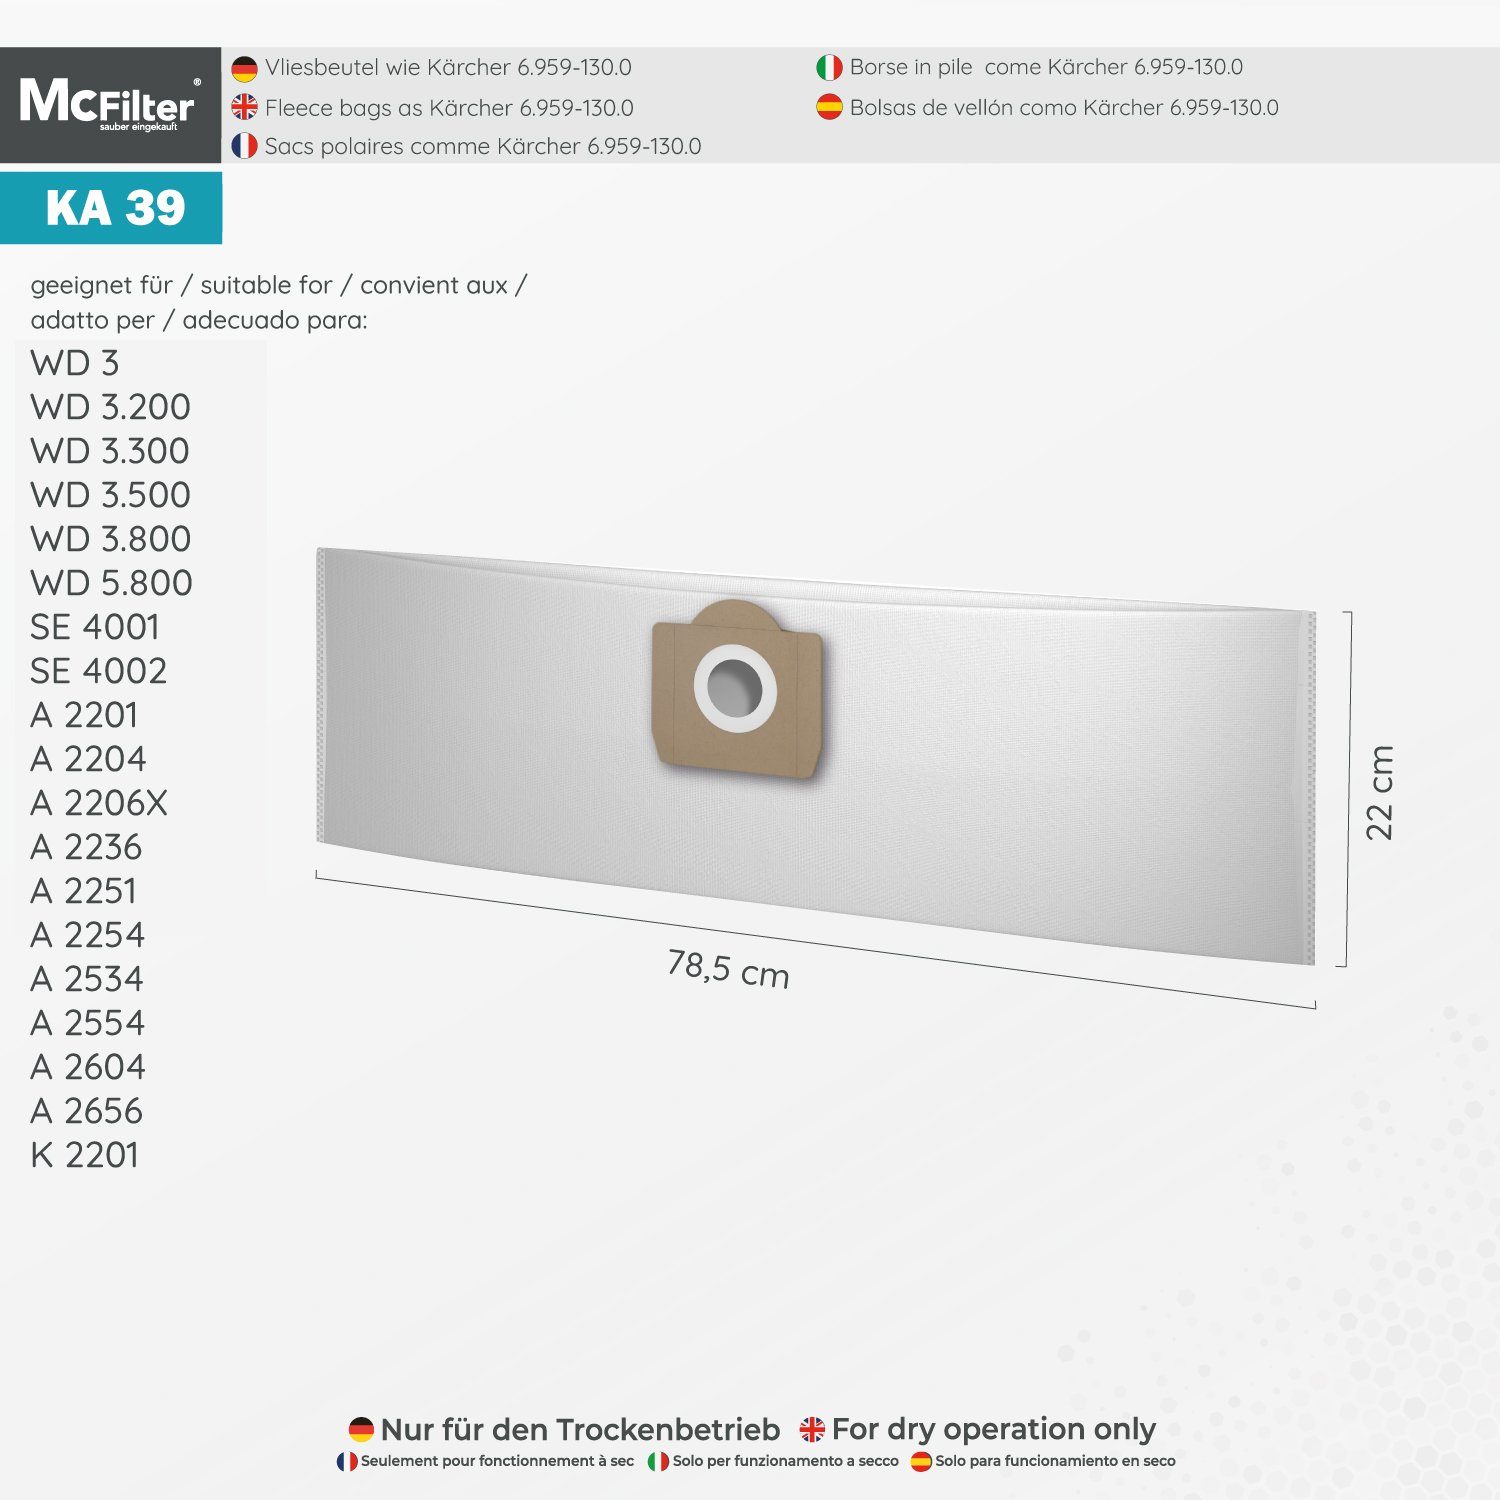 McFilter Staubsaugerbeutel geeignet für Kärcher Staubsauger, P passend Kit 22 6.959-130.0 (Beutel), Extension + (Patronenfilter) für 3 2 MV MV3 St., Stück) (20 Filter, 6.414-552.0 für Alternative